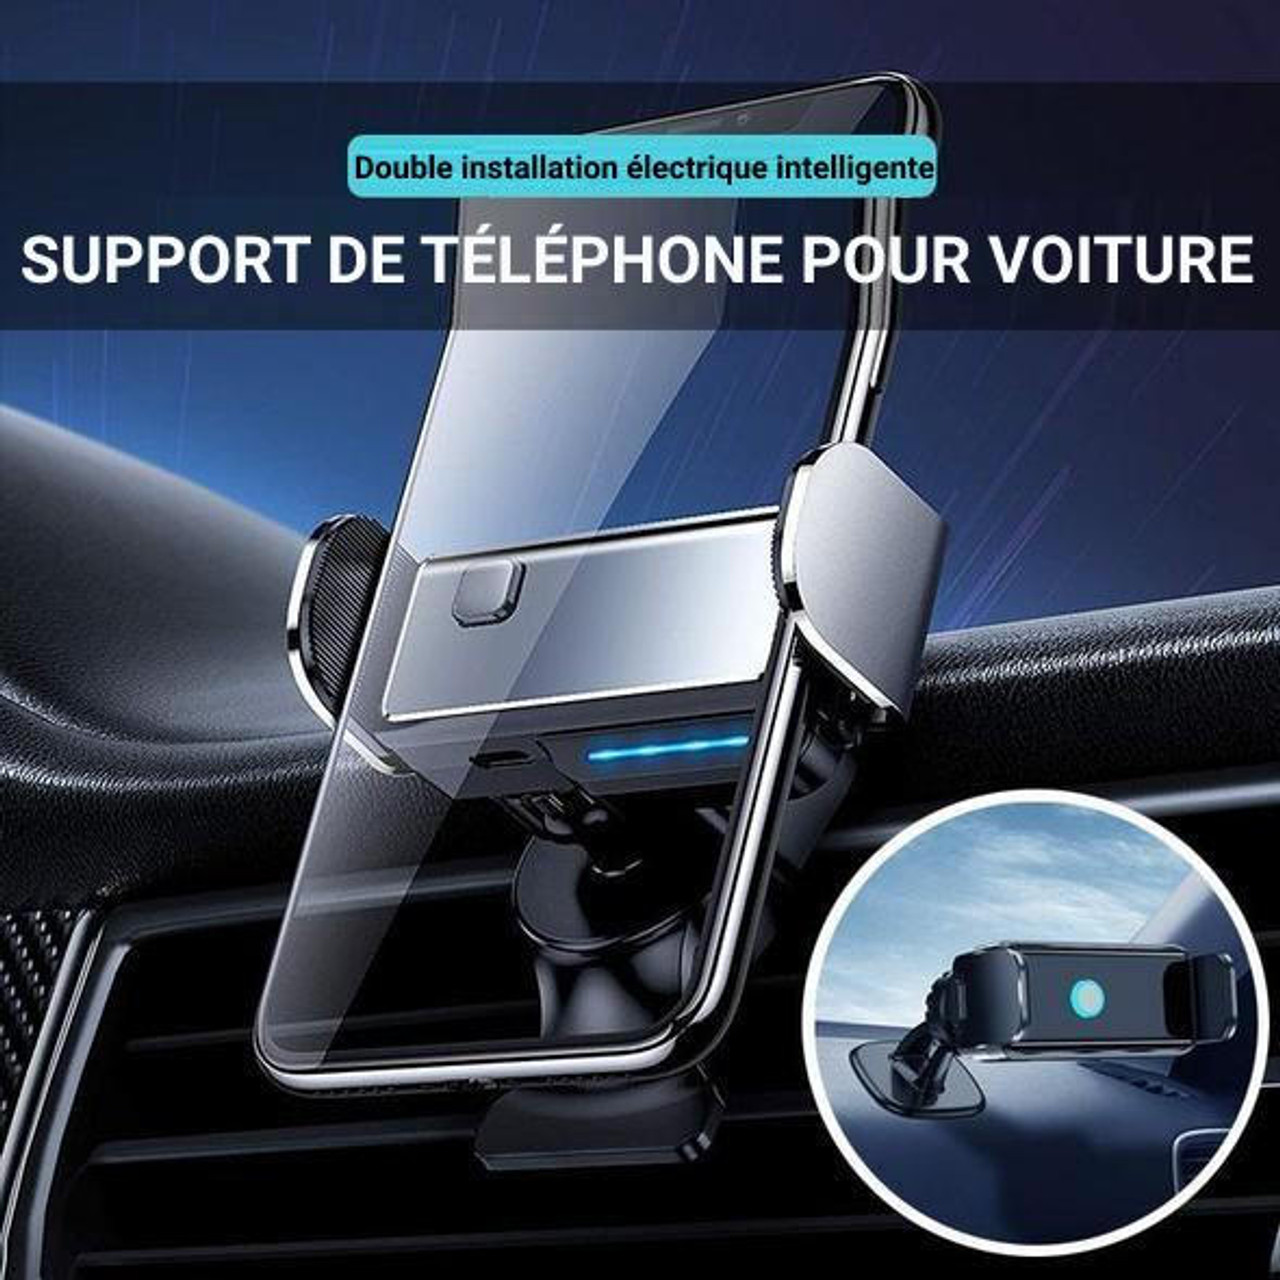 Supports téléphone voiture  Livraison gratuite in FR & BE